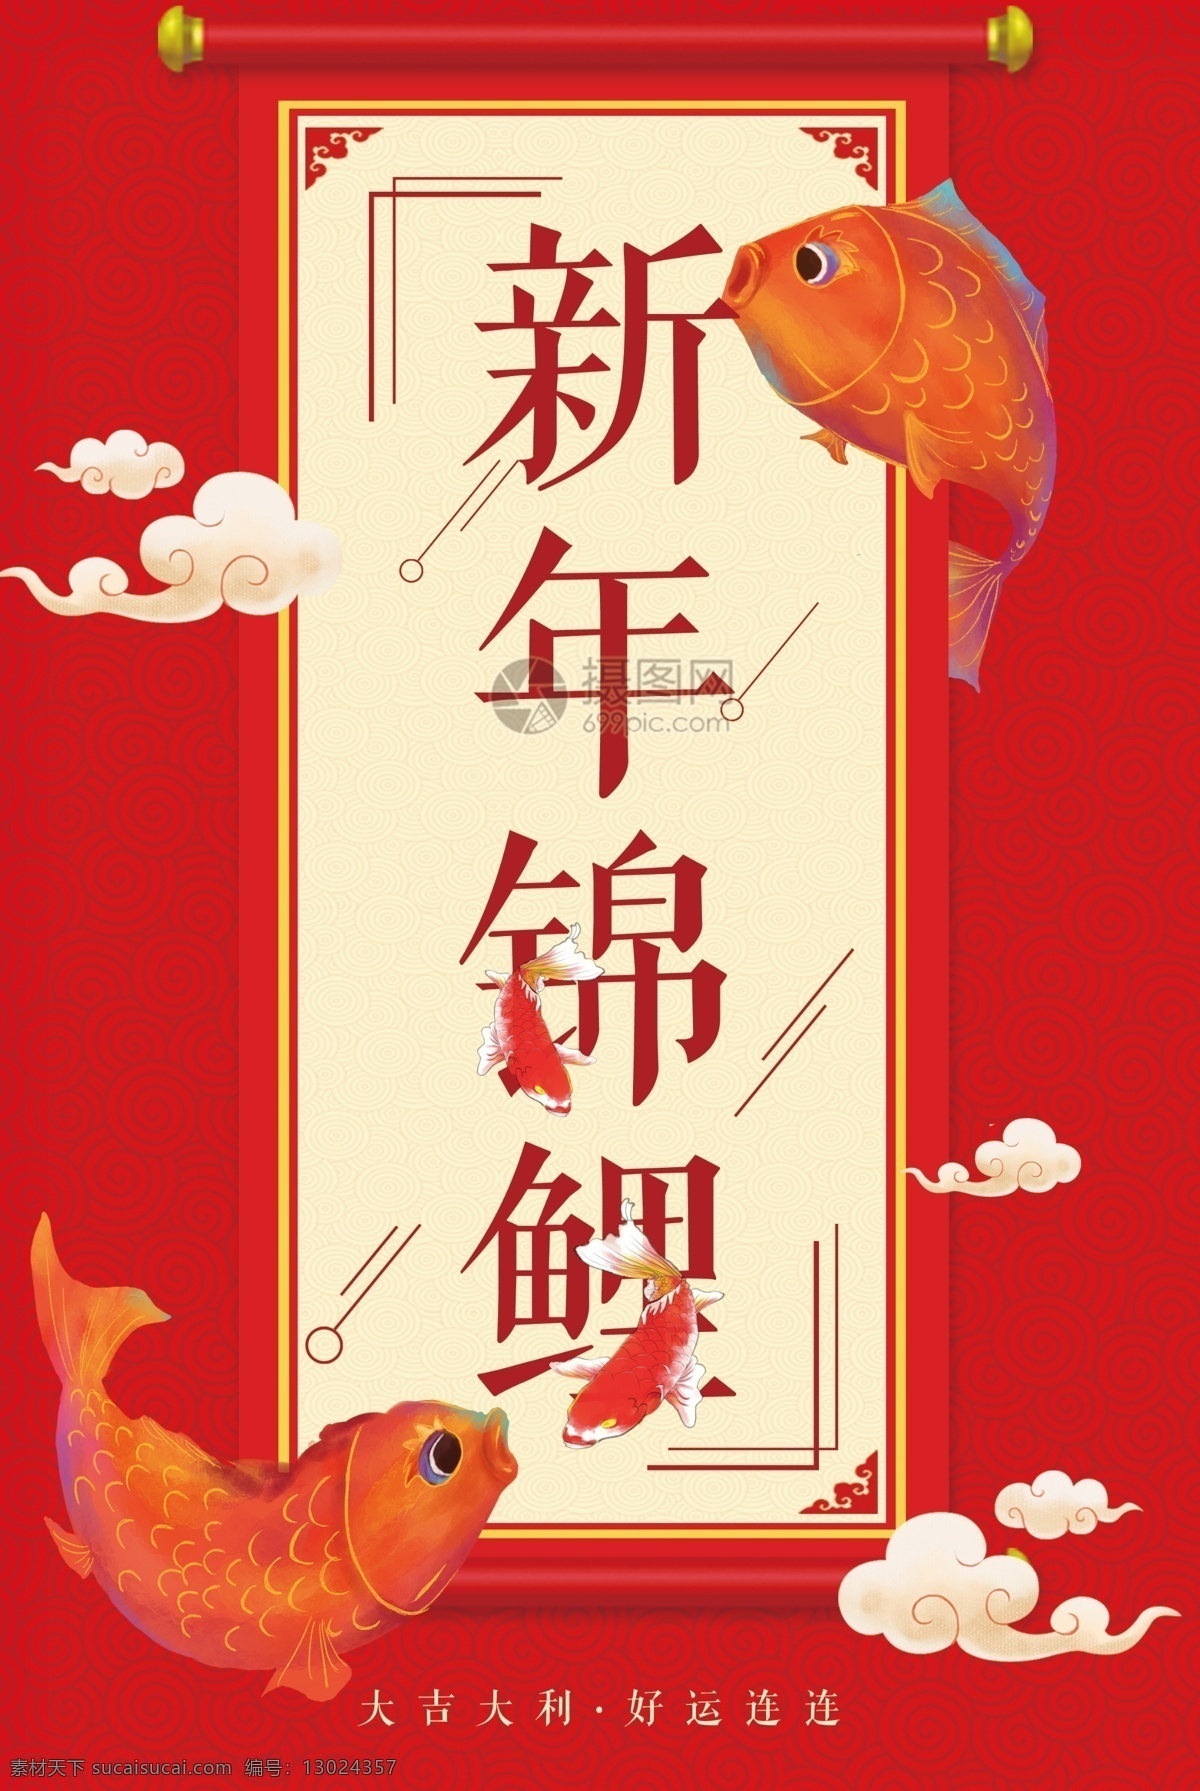 中国 风 红色 新年 锦鲤 海报 中国风 大红色 卷轴 鲤鱼 幸运 好运连连 大吉大利 春节 农历新年